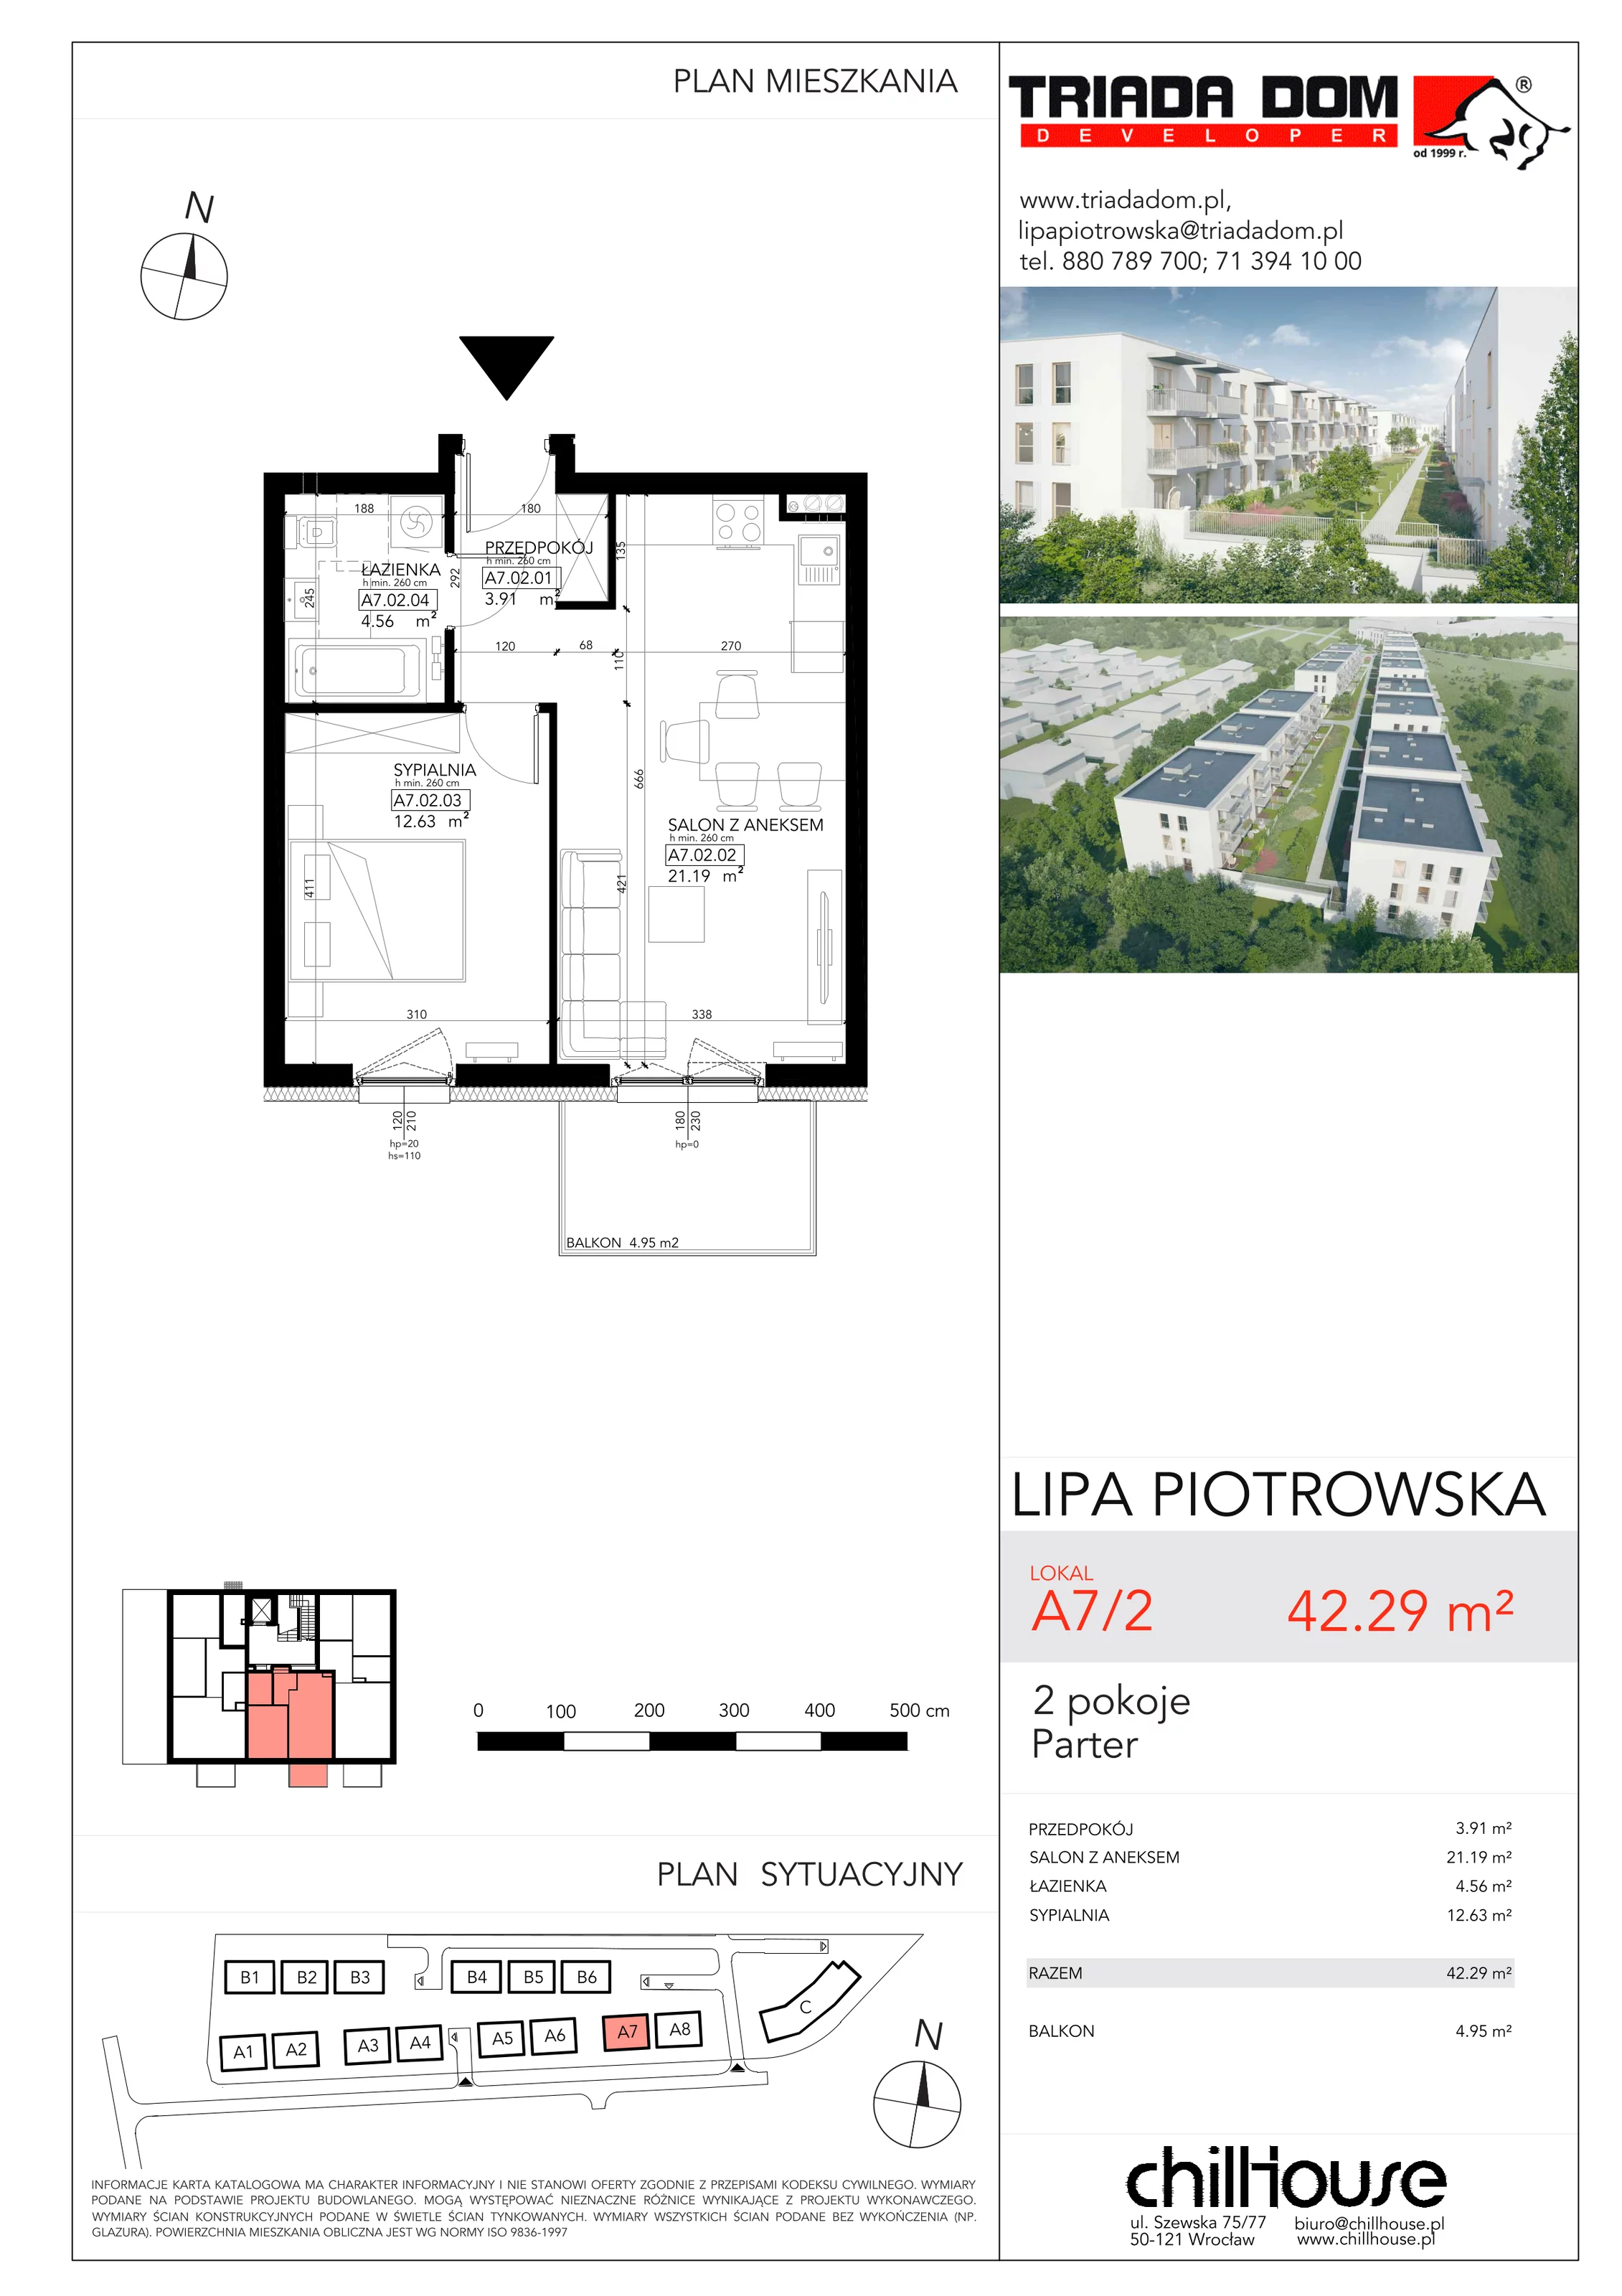 Mieszkanie 42,29 m², parter, oferta nr A72, Lipa Piotrowska, Wrocław, Lipa Piotrowska, ul. Lawendowa / Melisowa